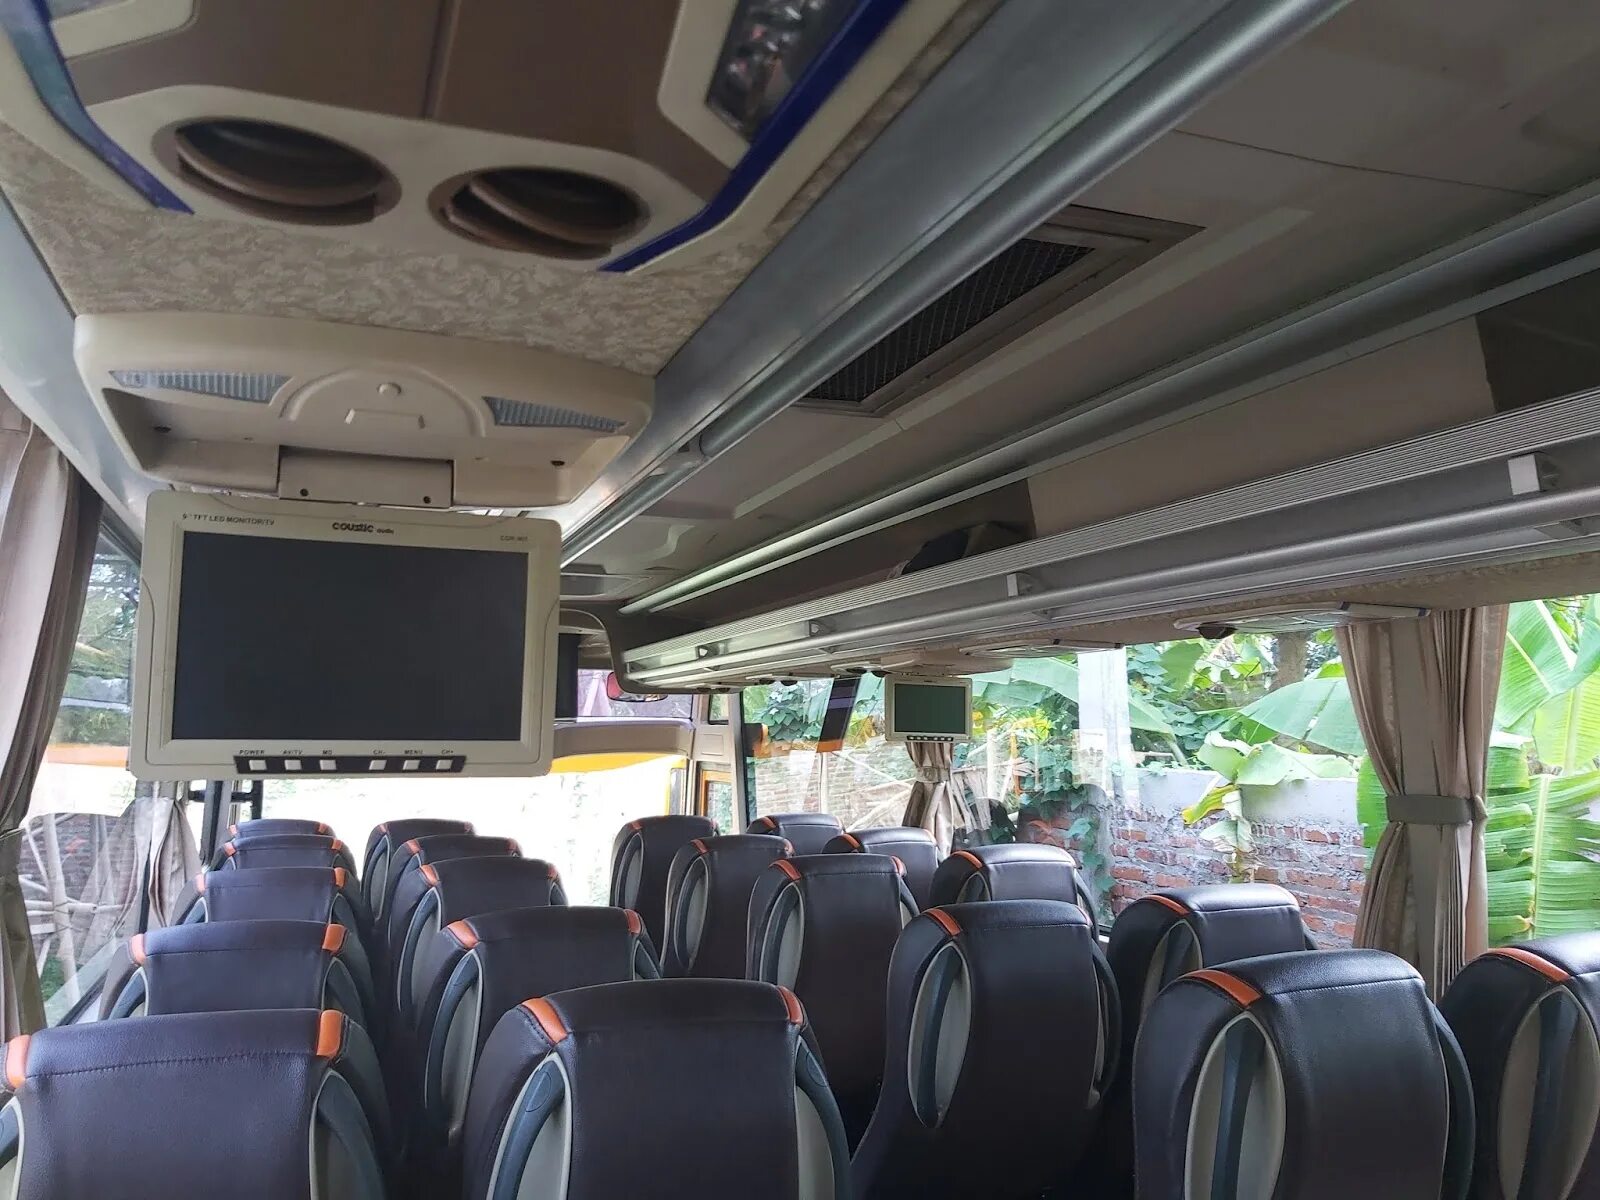 Либерти Bus /MCI Star 850 RF. Foxbus автобус 35 мест. Экскурсионный автобус внутри. ВОЛГАЛАЙН автобус. Волголайн купить билет на автобус москва